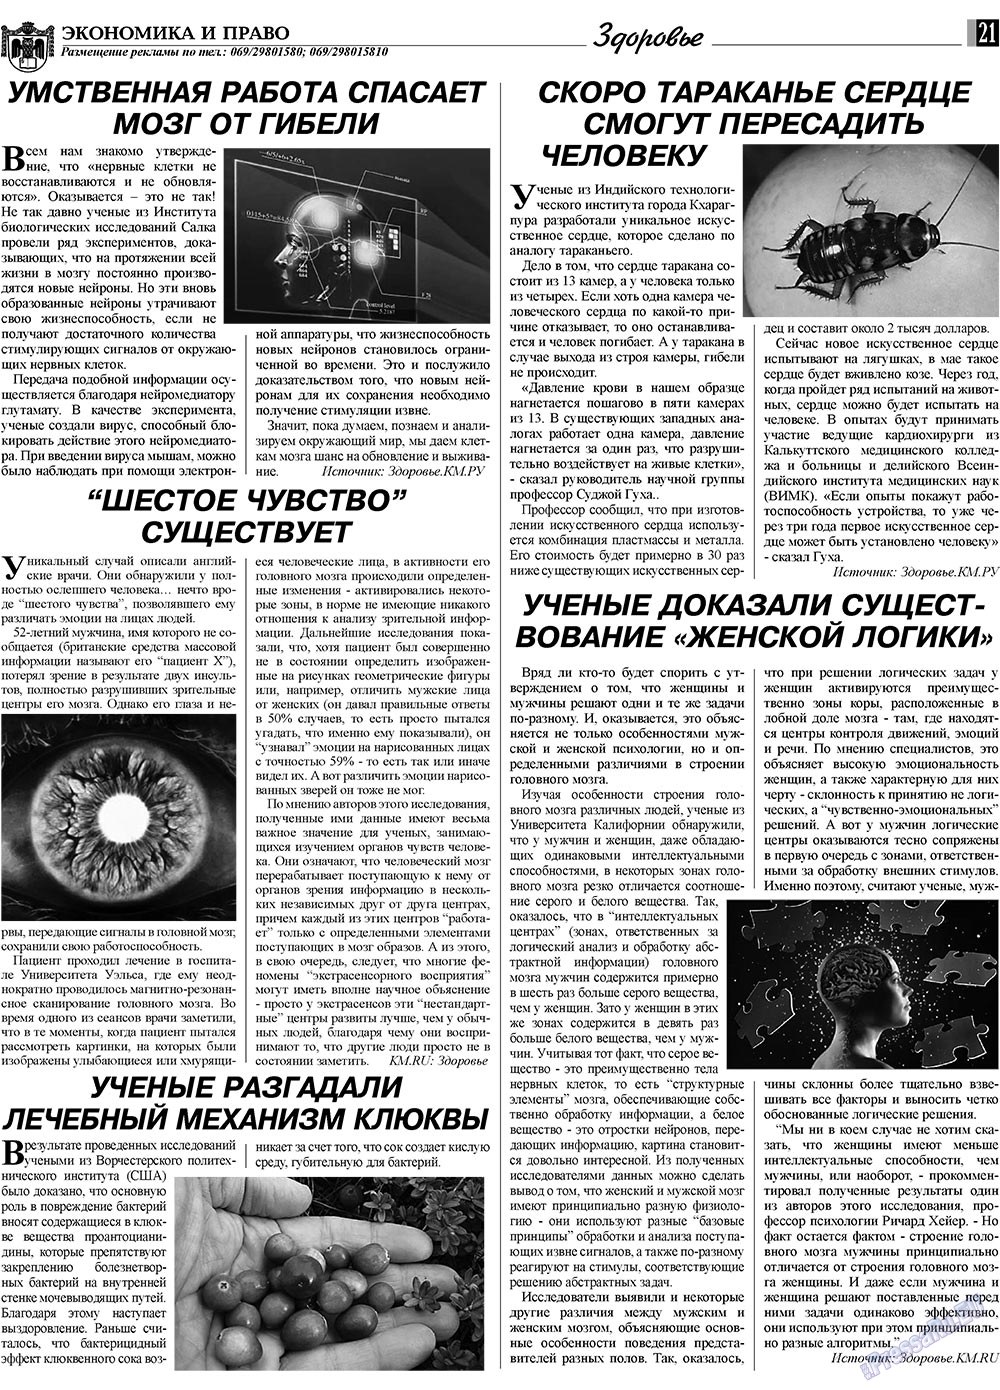 Экономика и право, газета. 2009 №5 стр.21